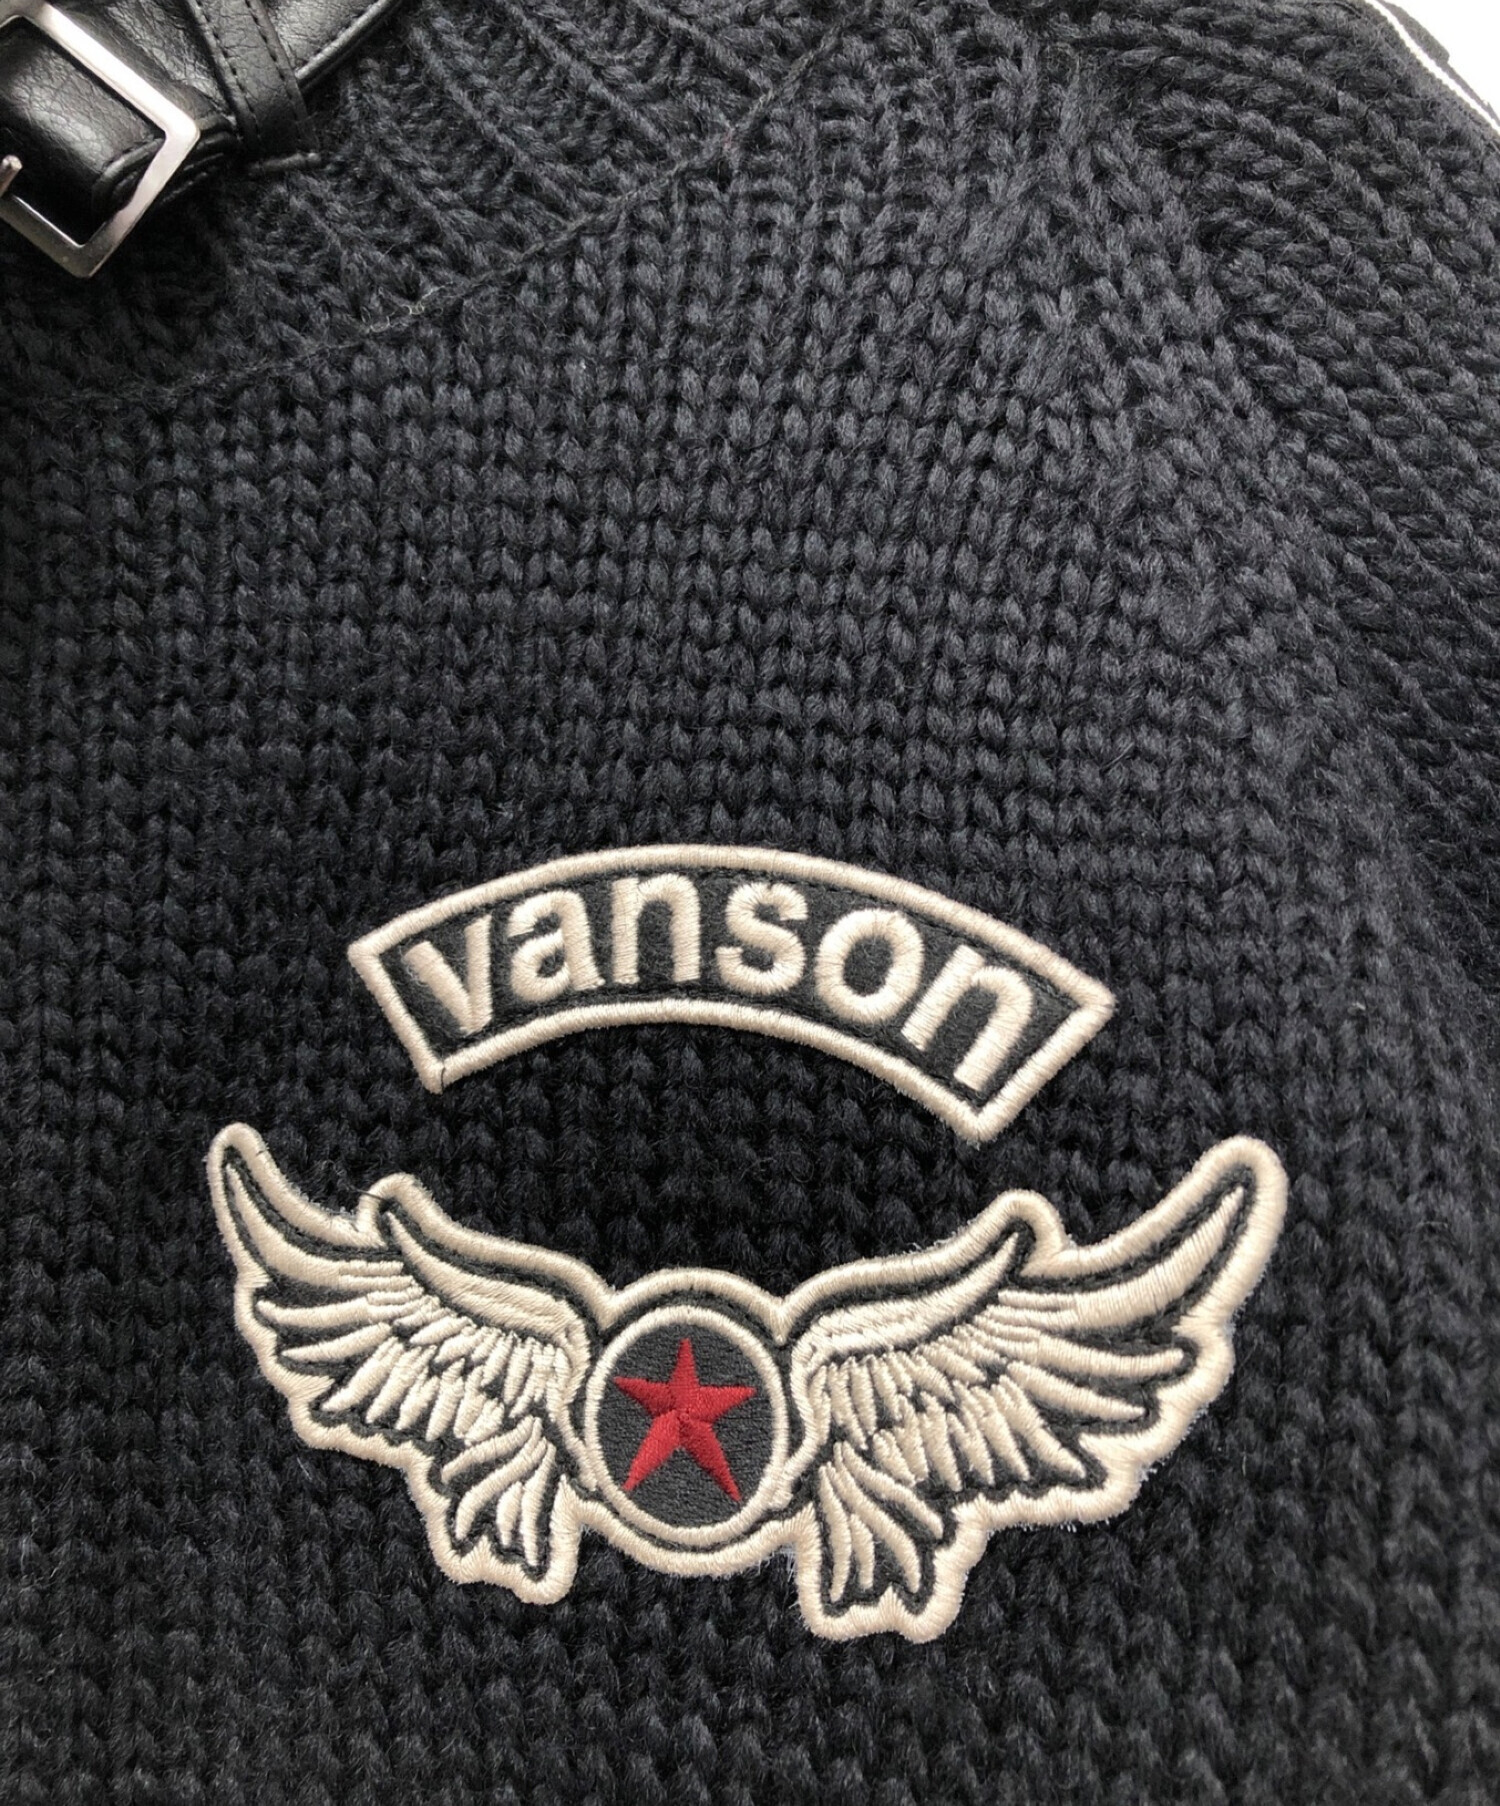 新品未使用品ですVANSON バンソン ニットジャケット(裏ボア) サイズL